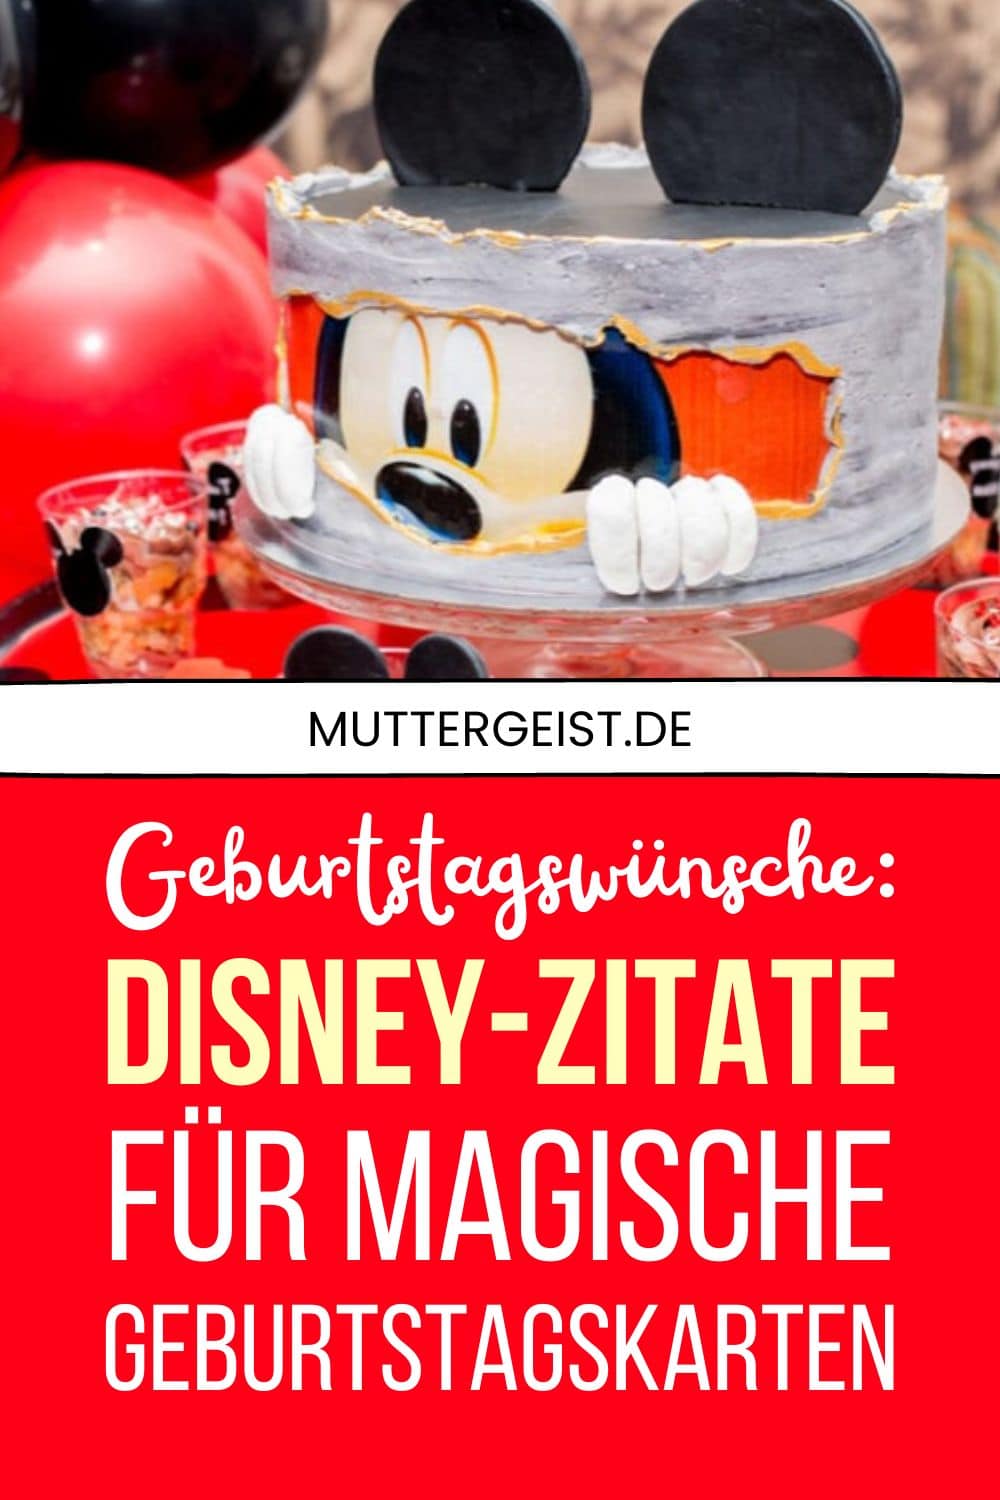 Geburtstagswünsche Disney-Zitate für magische Geburtstagskarten Pinterest